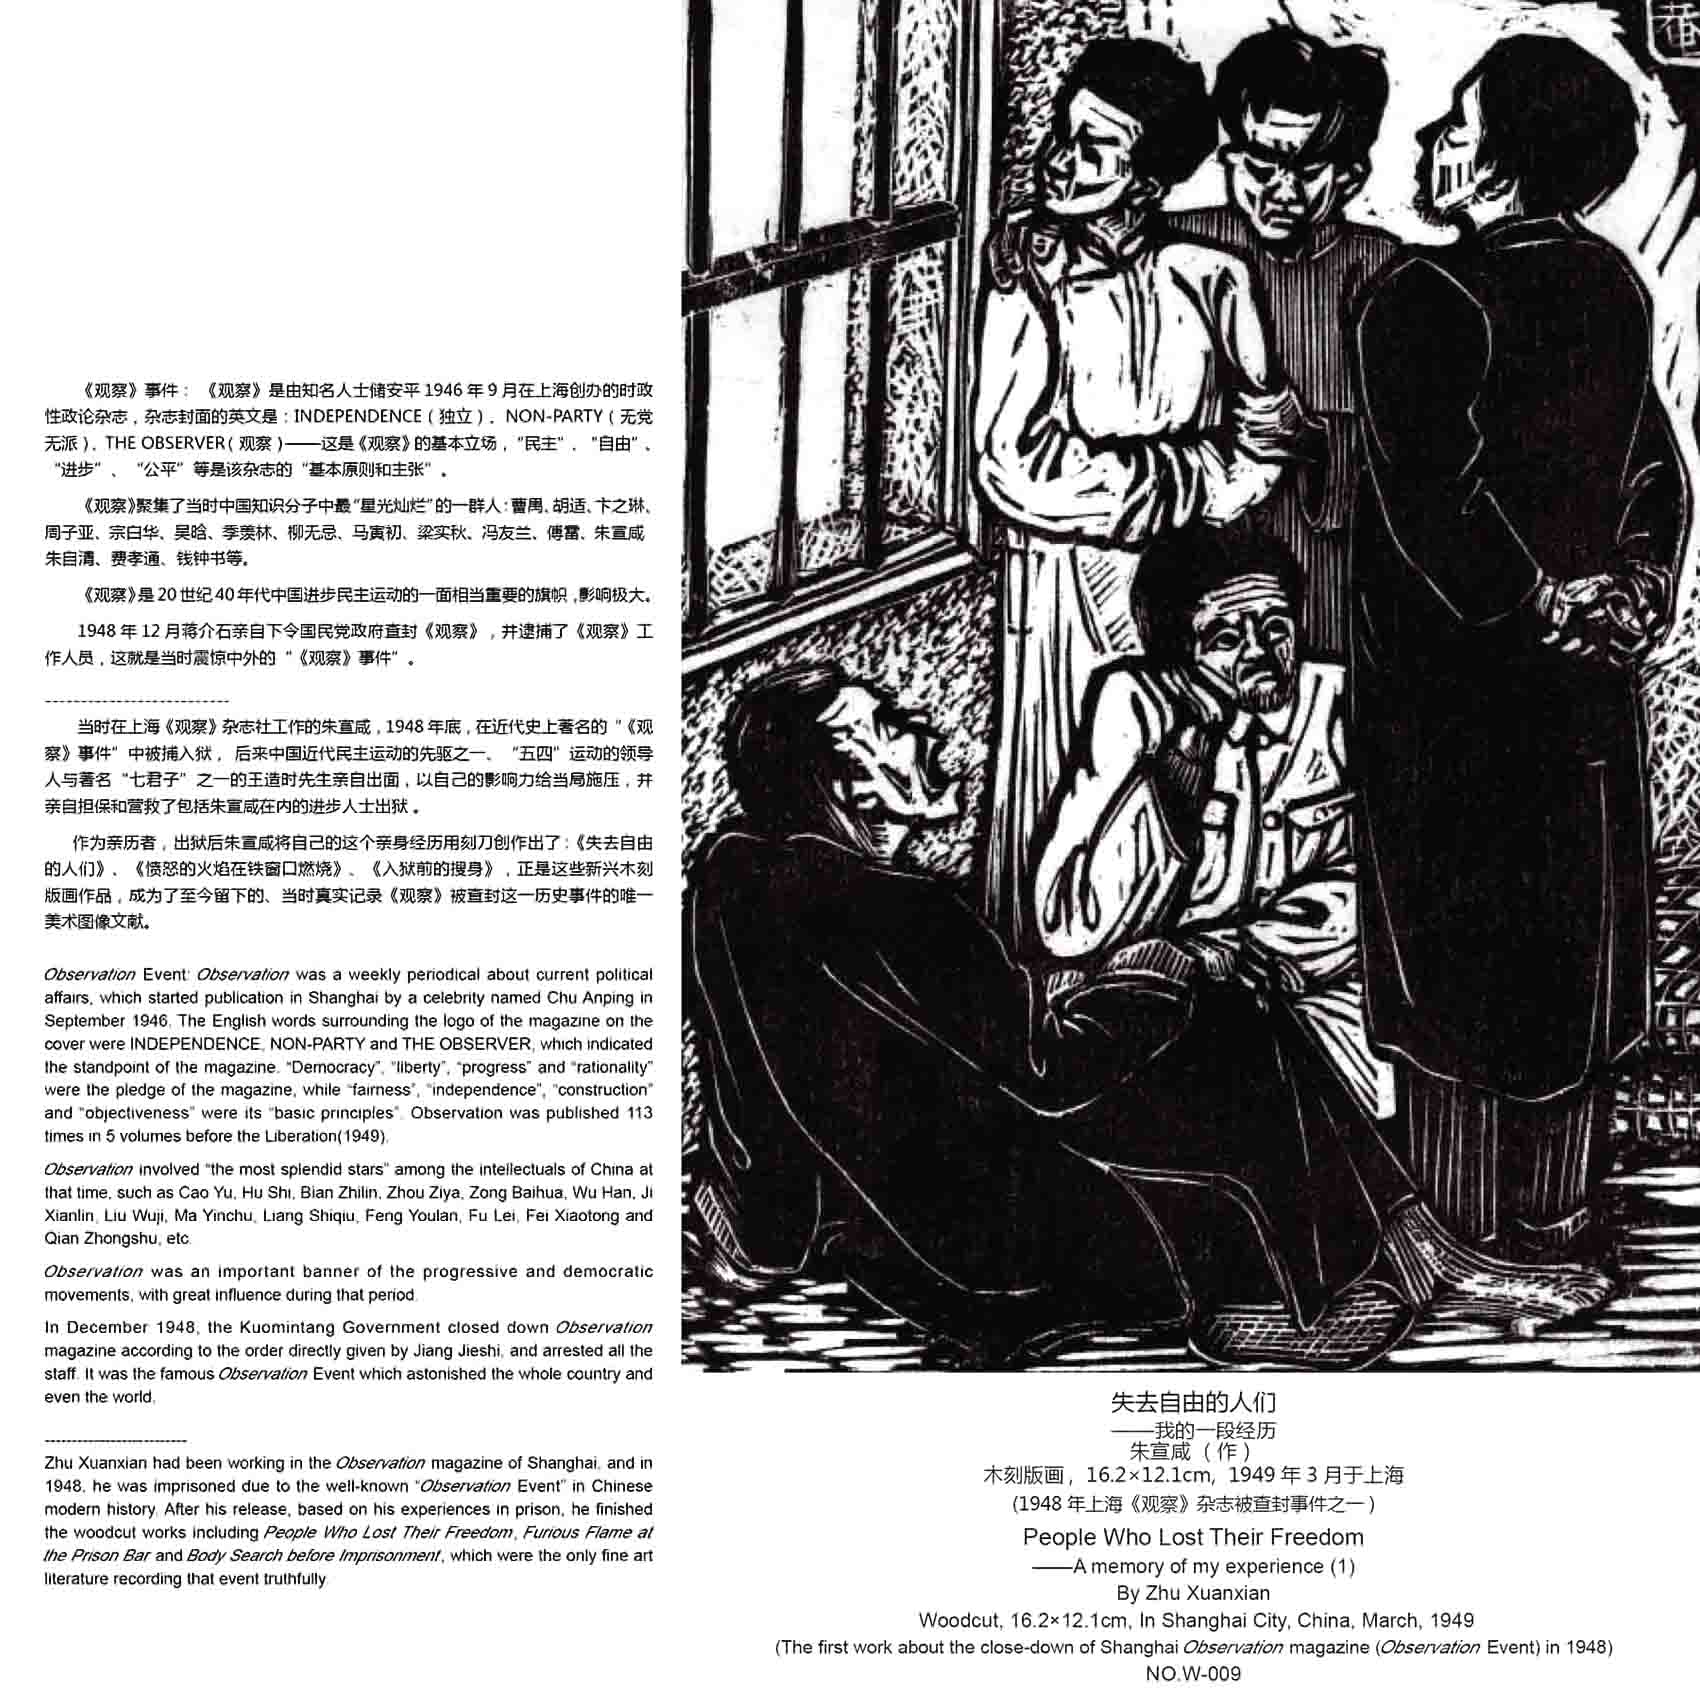 朱宣鹹版畫《“觀察”事件之1》1949年3月作